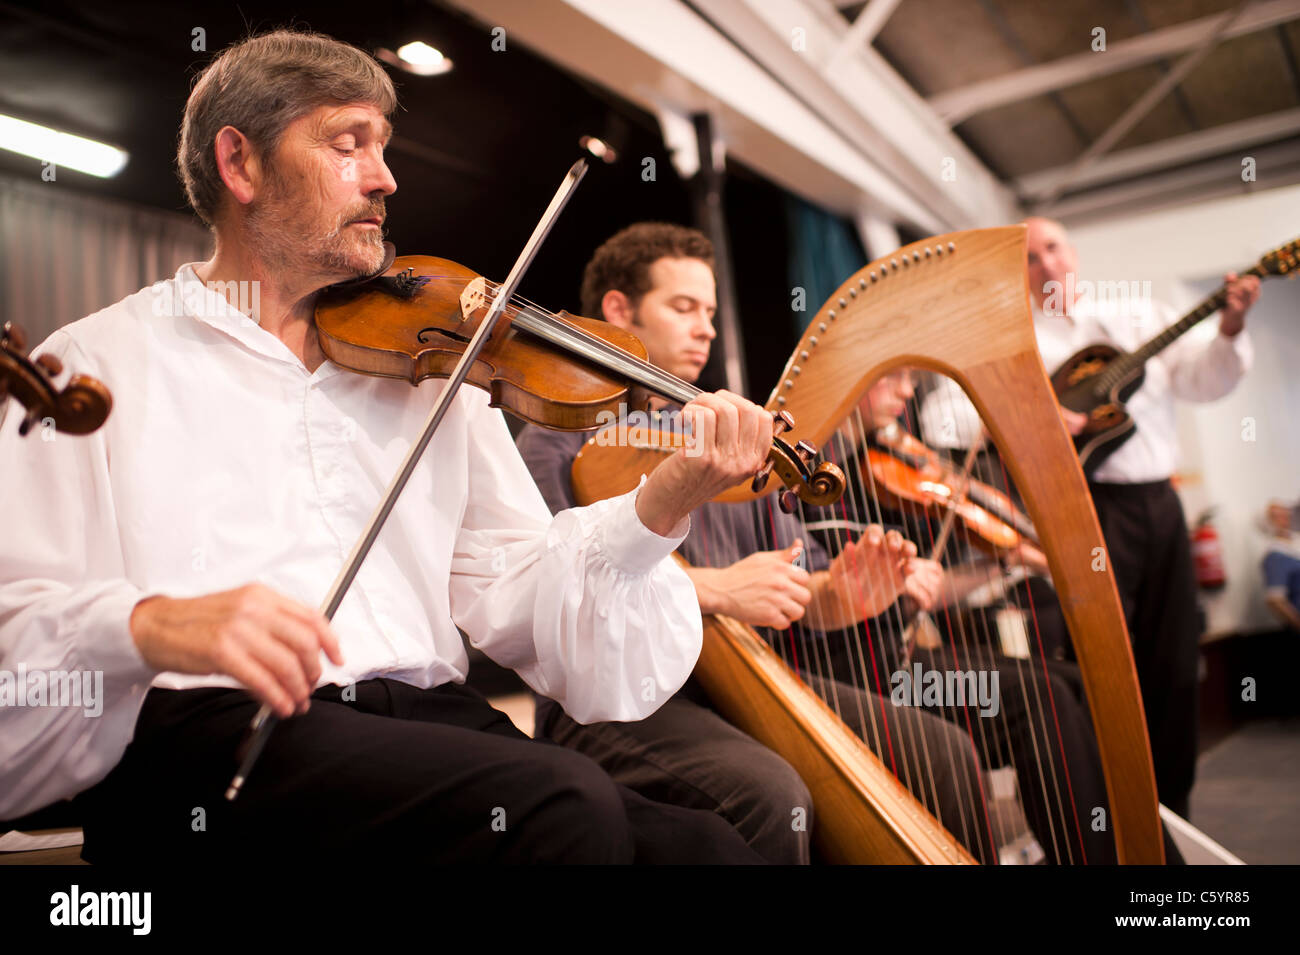 Musiciens folk gallois jouant du violon et de l'harpe, Wales UK Banque D'Images